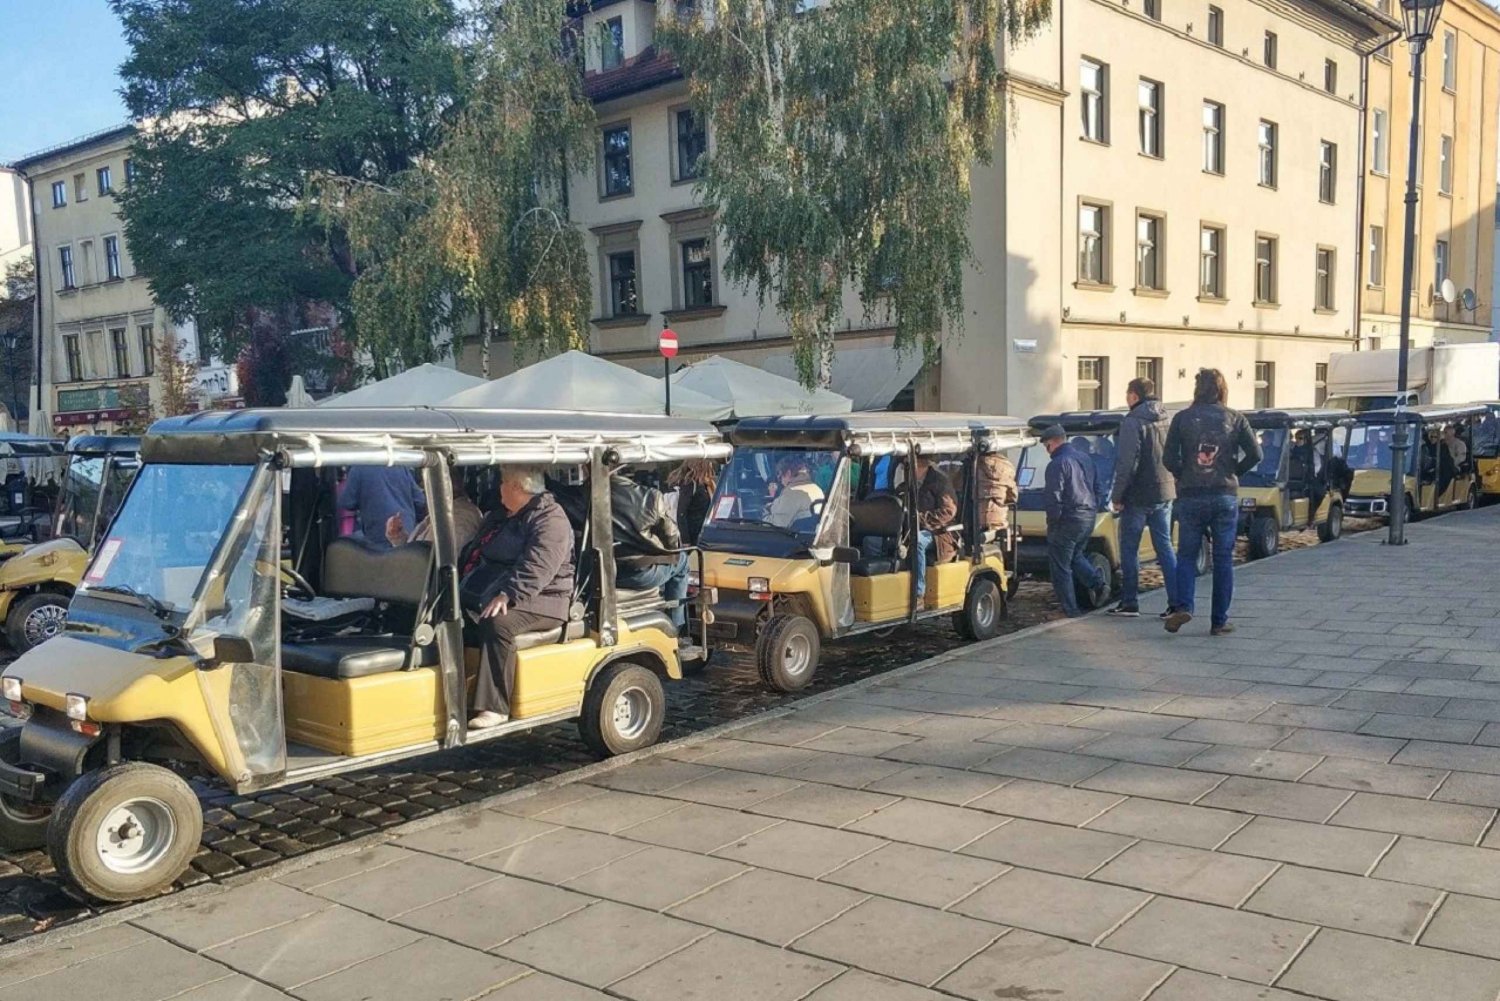 Cracovia: Tour del quartiere ebraico e del ghetto in golf cart elettrico